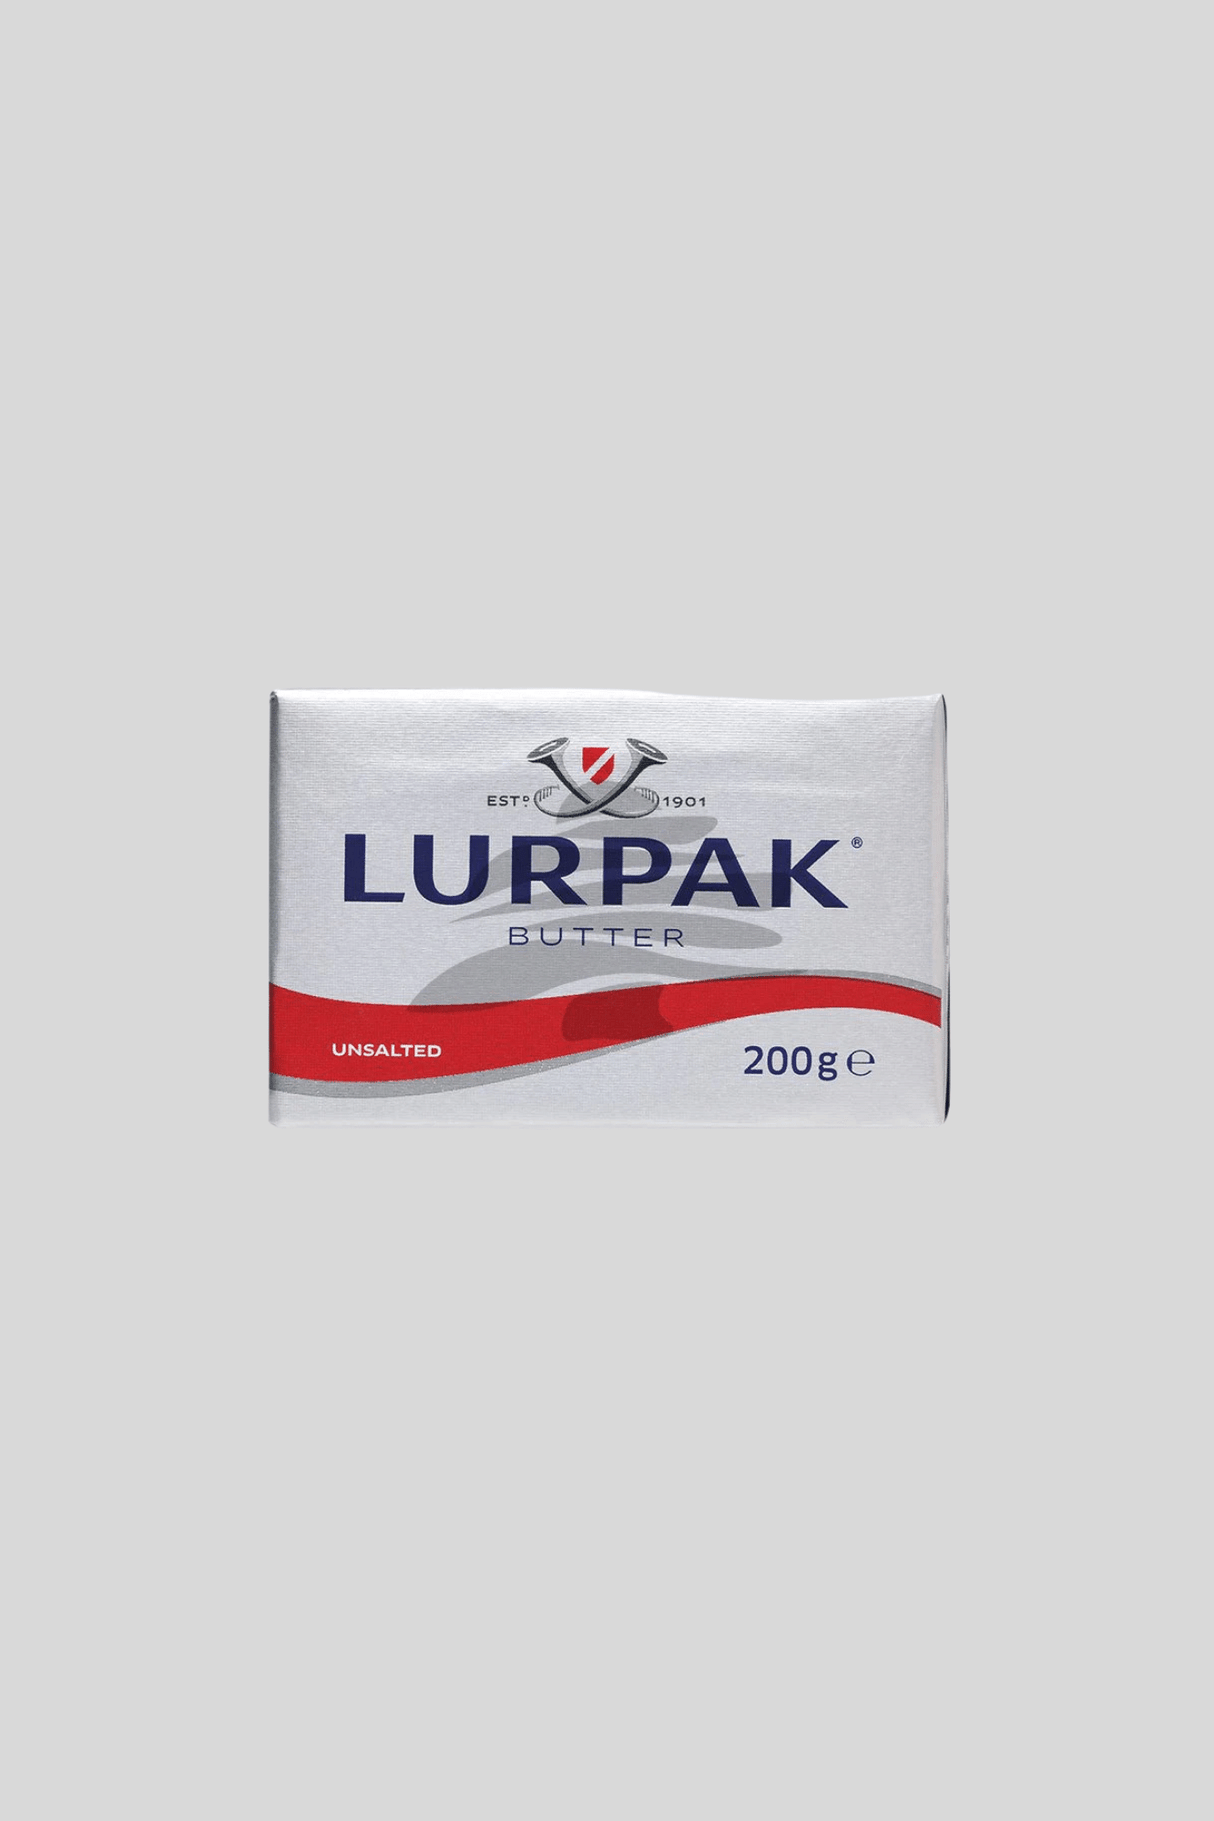 lurpak butter unsalted 200g